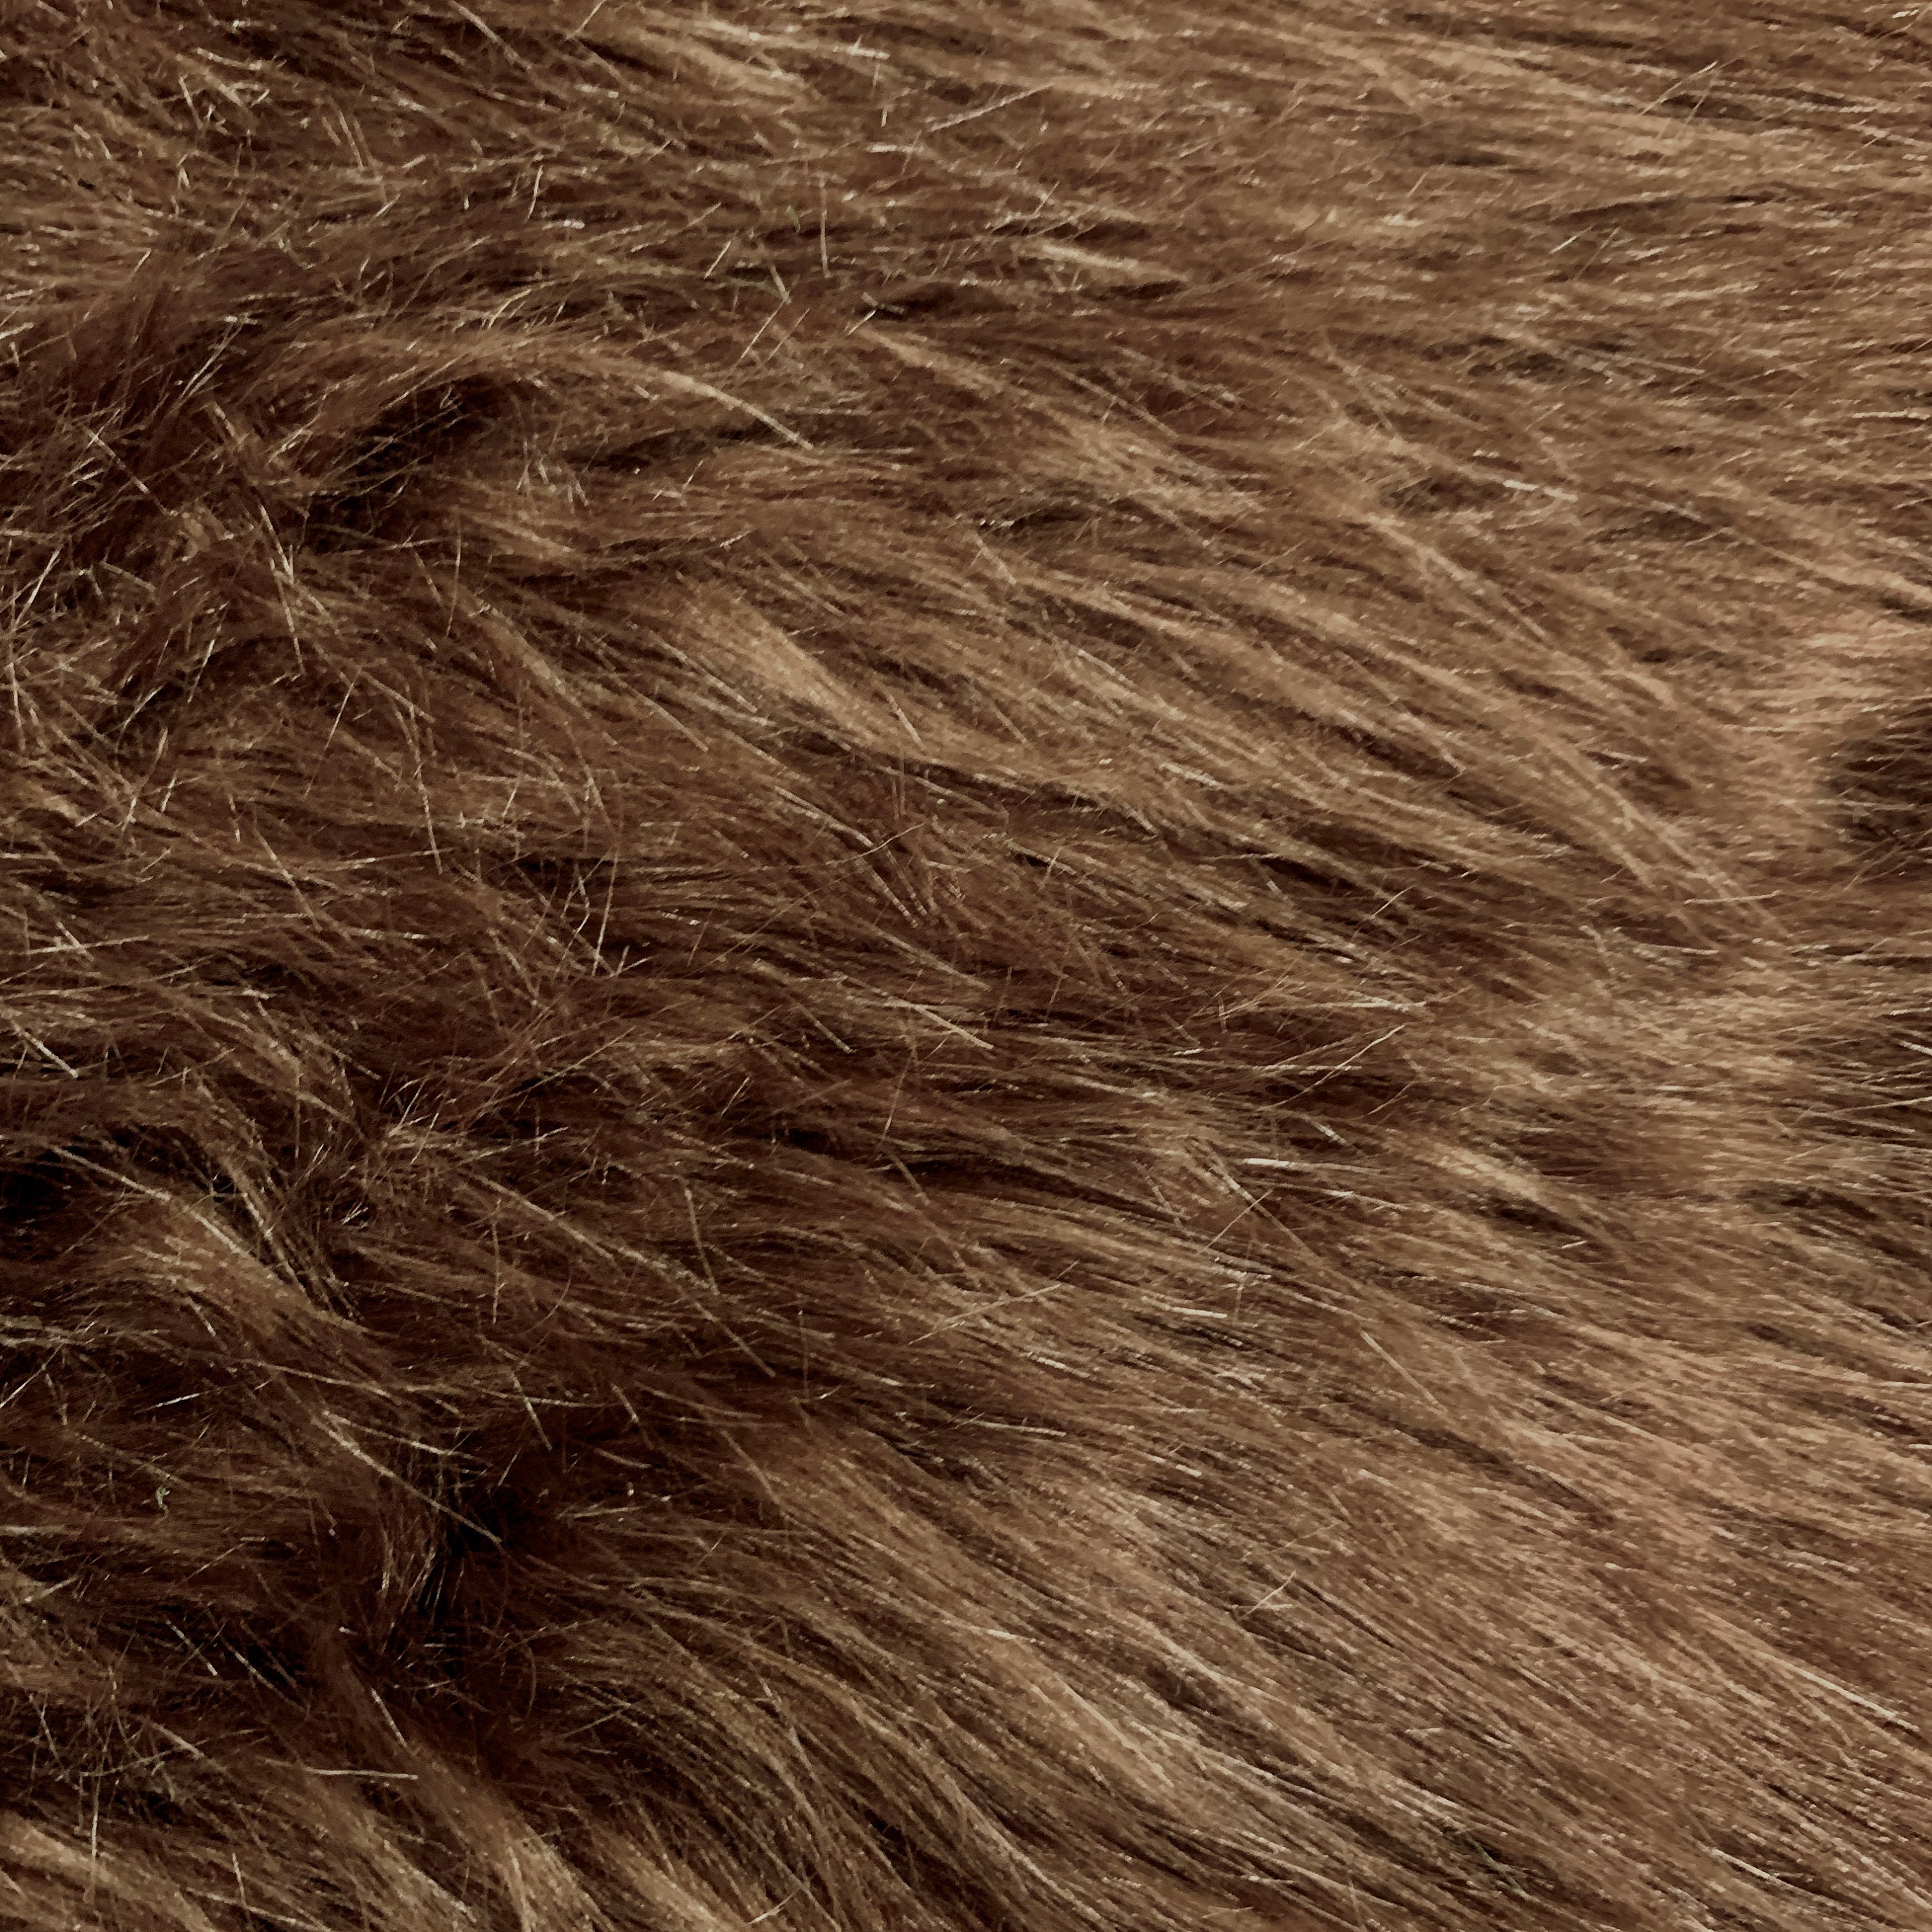 Sasha BROWN 2 Inch Long Pile Soft Luxury Faux Fur Fabric Fursuit